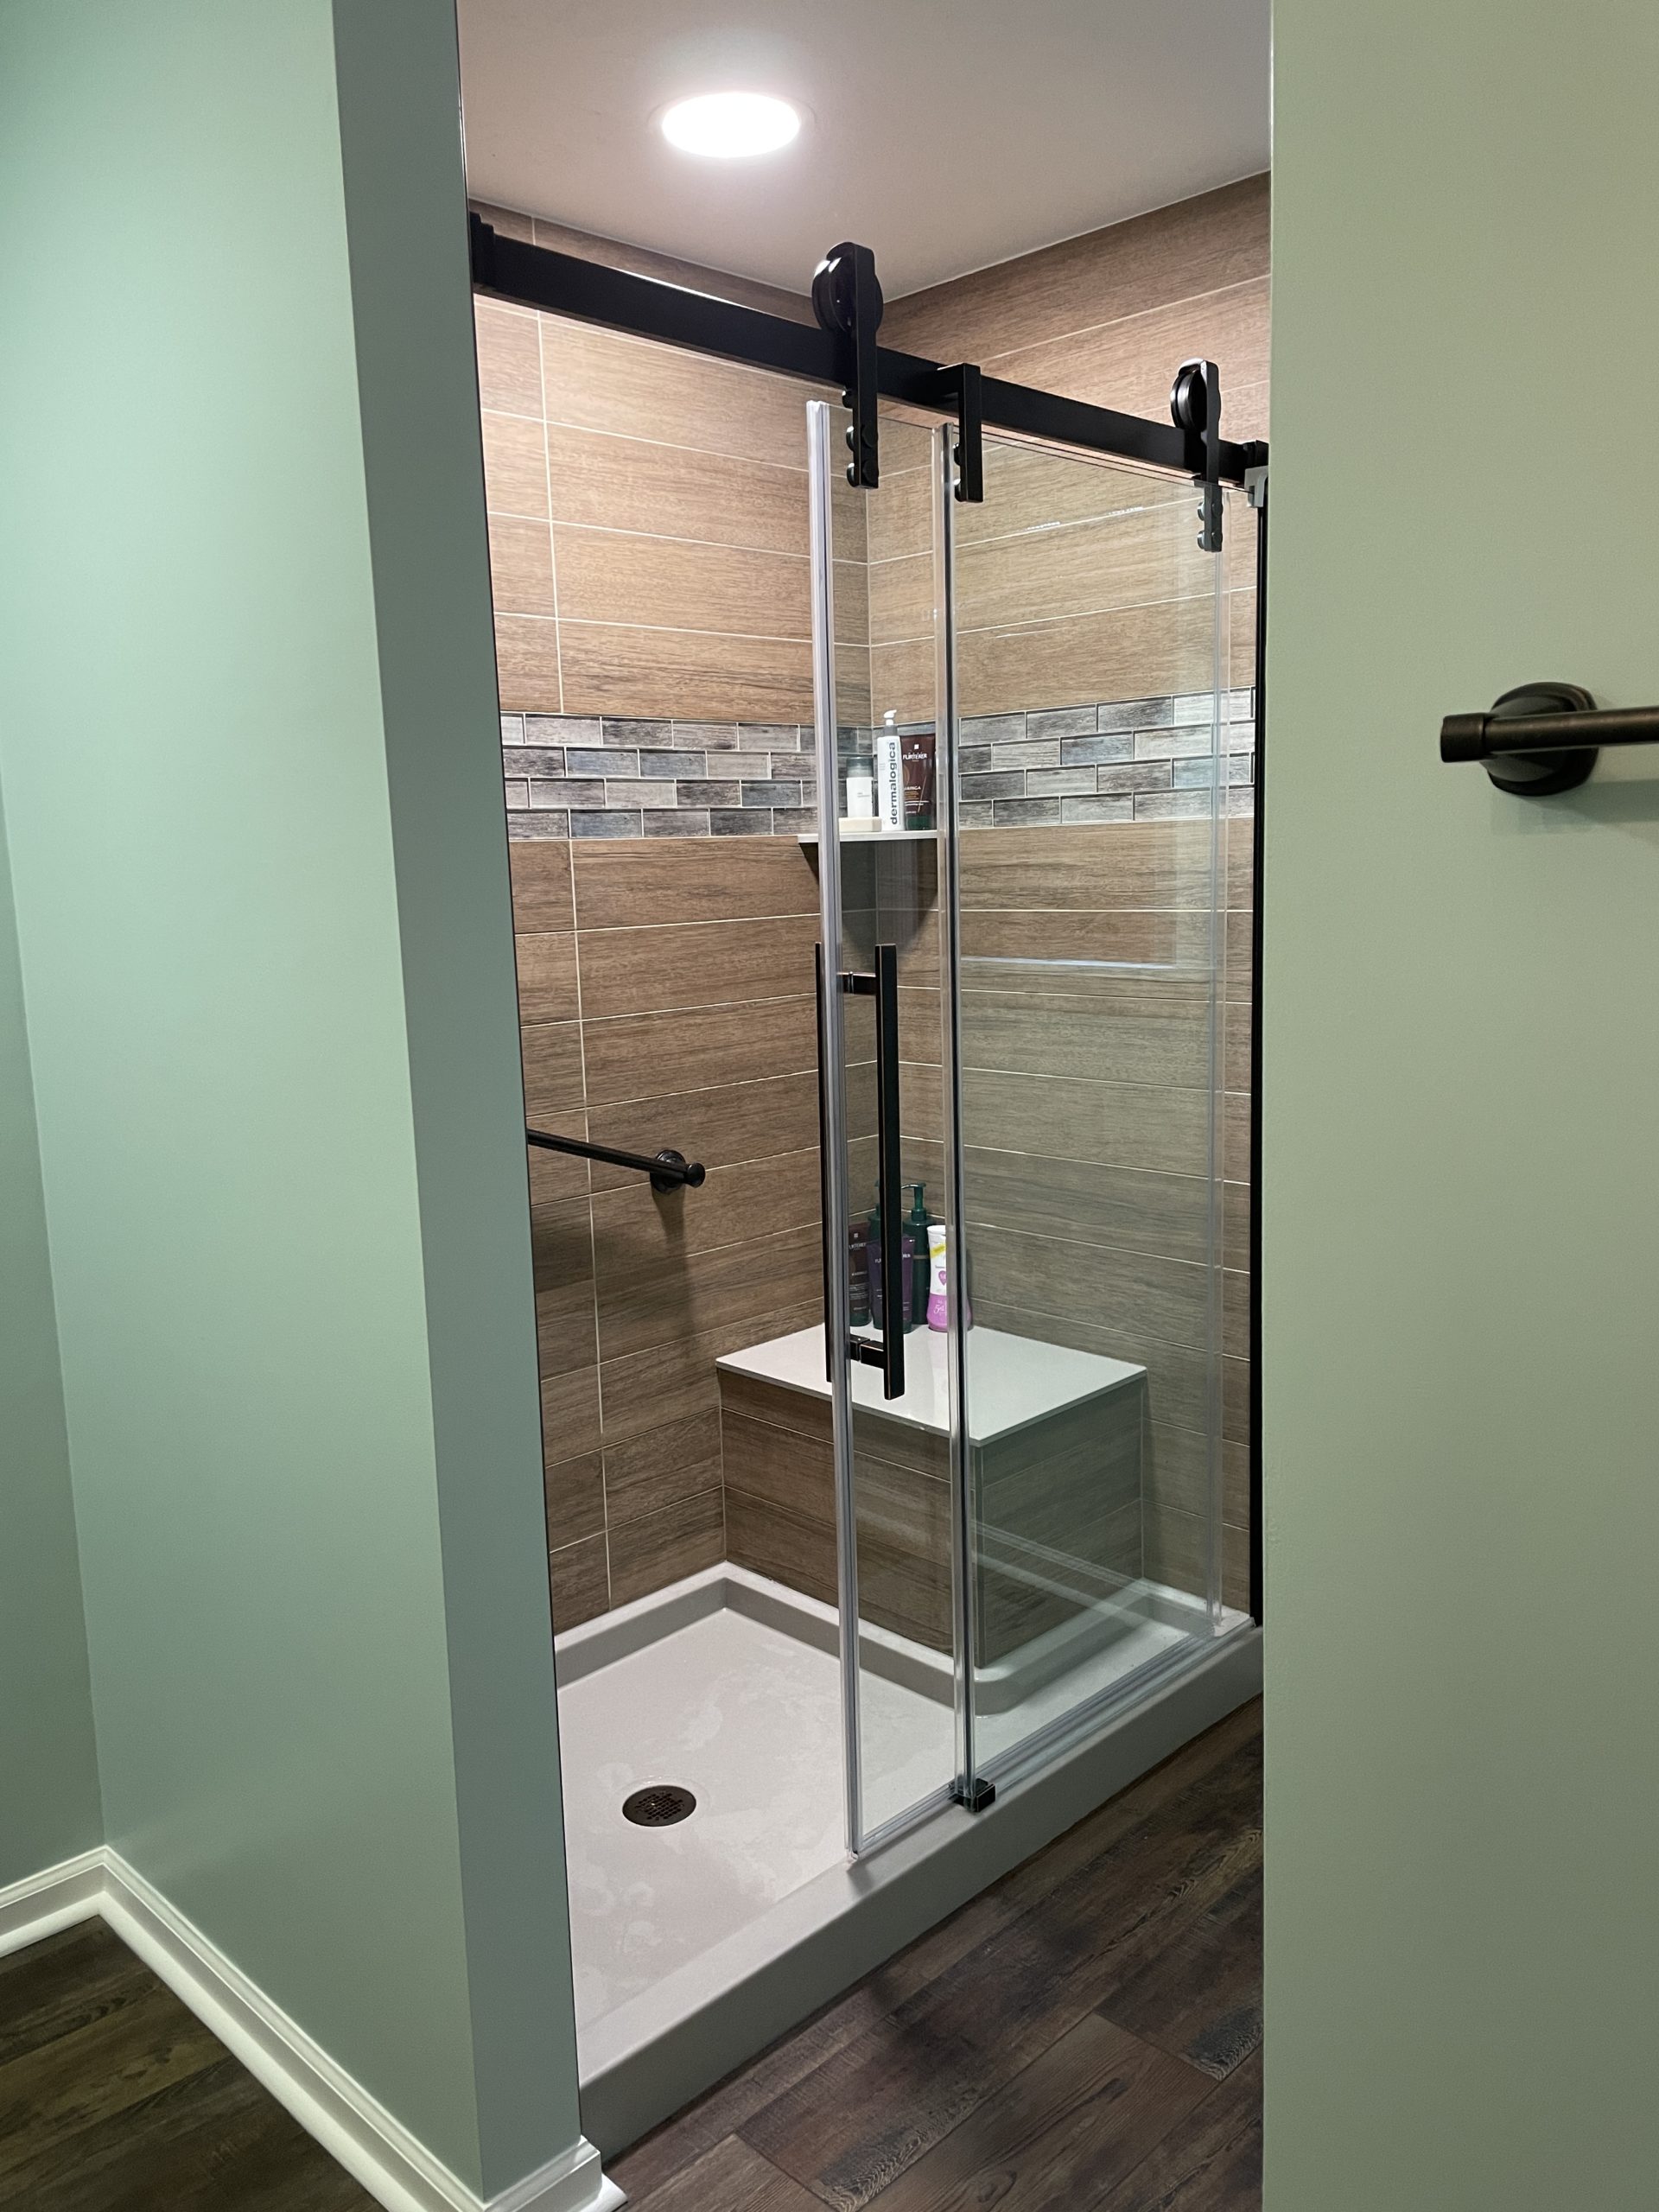  |  Wood Tile Bathroom Shower